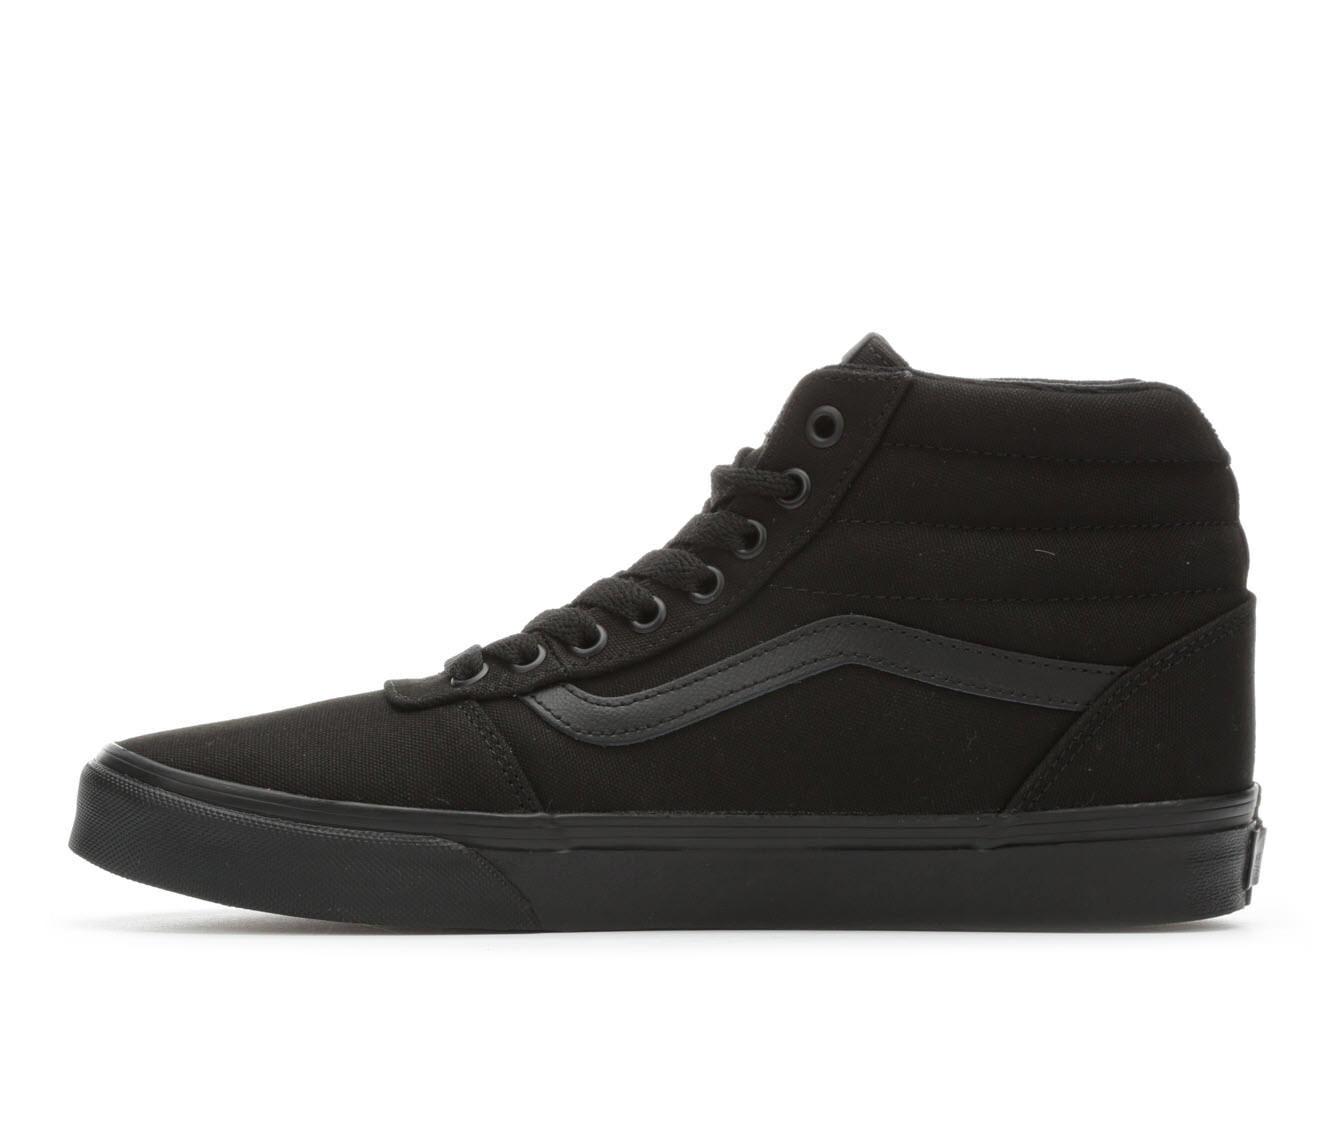 Vans Rubber Ward Hi Athletic Shoe in Black/Black (Black) for Men - Save ...